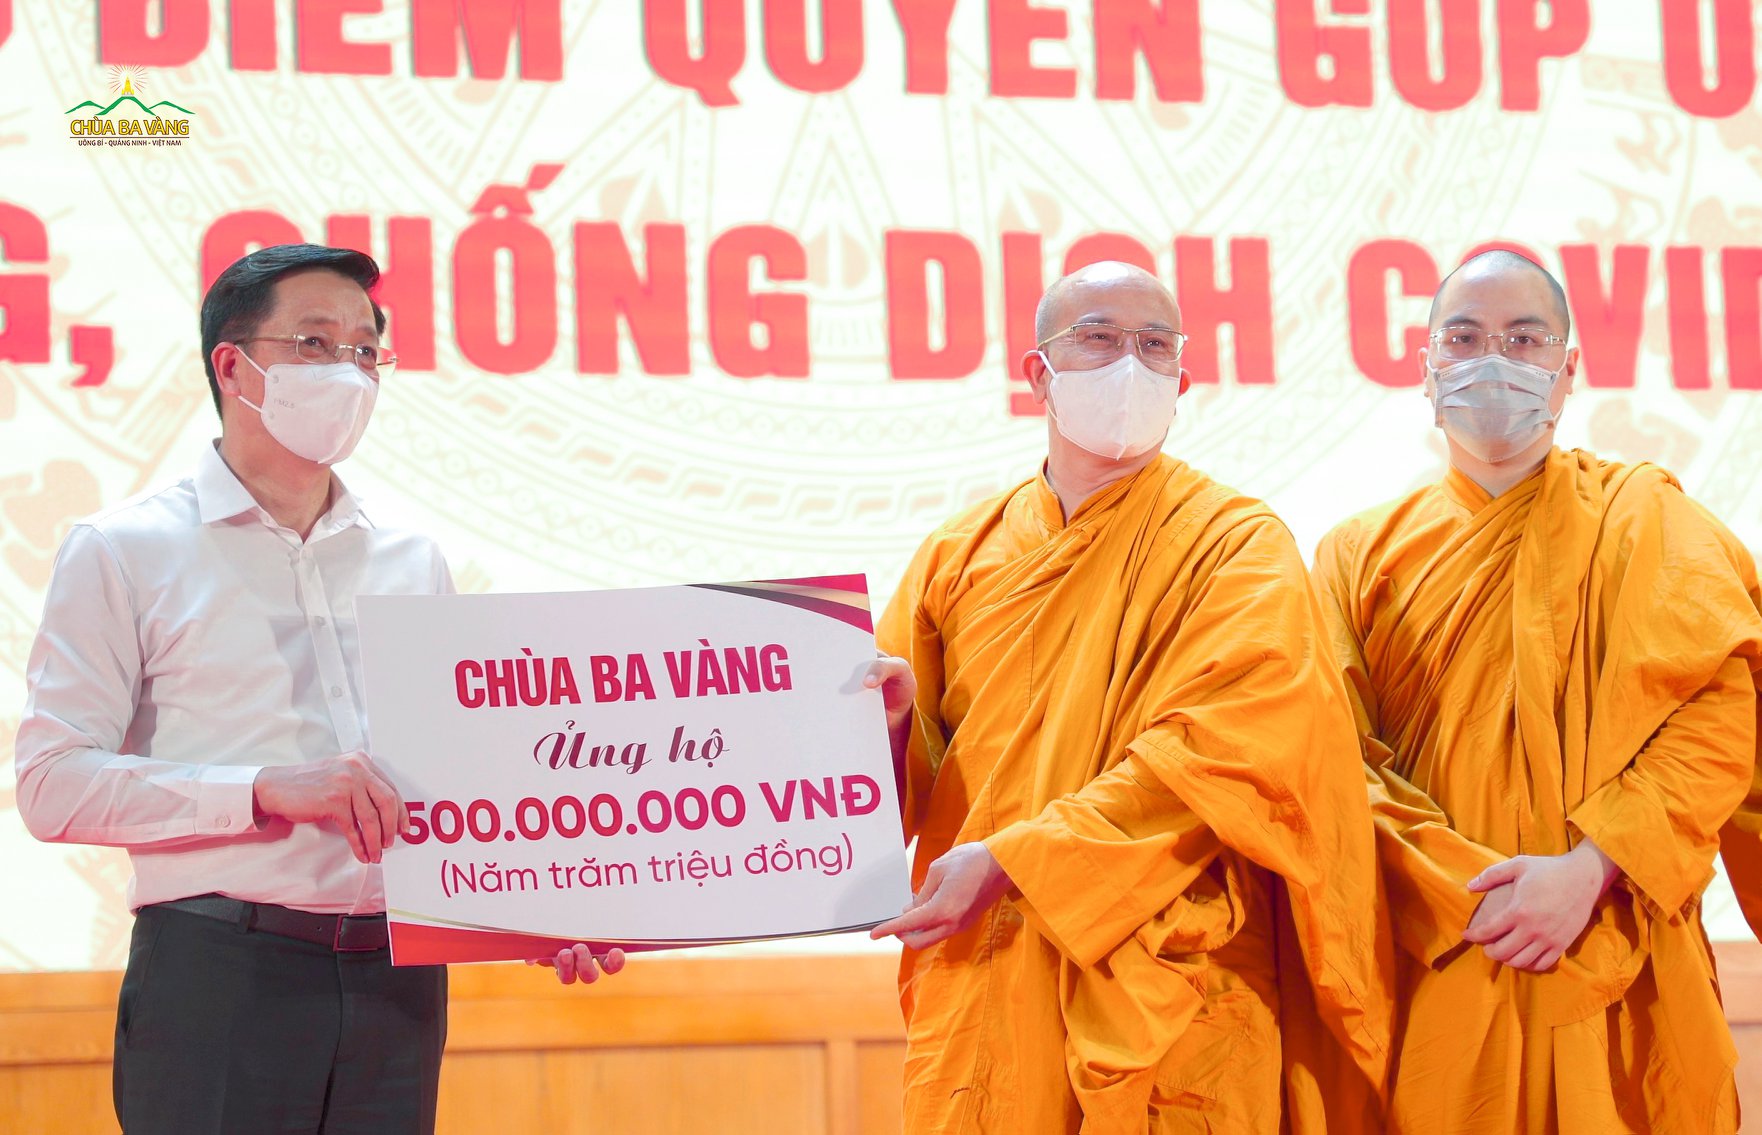 Sư Phụ Thích Trúc Thái Minh cùng chư Tăng chùa Ba Vàng đã trao tặng 500 triệu đồng ủng hộ, chung tay cùng người dân cả nước đóng góp cho công tác phòng chống, đẩy lùi dịch bệnh Covid-19